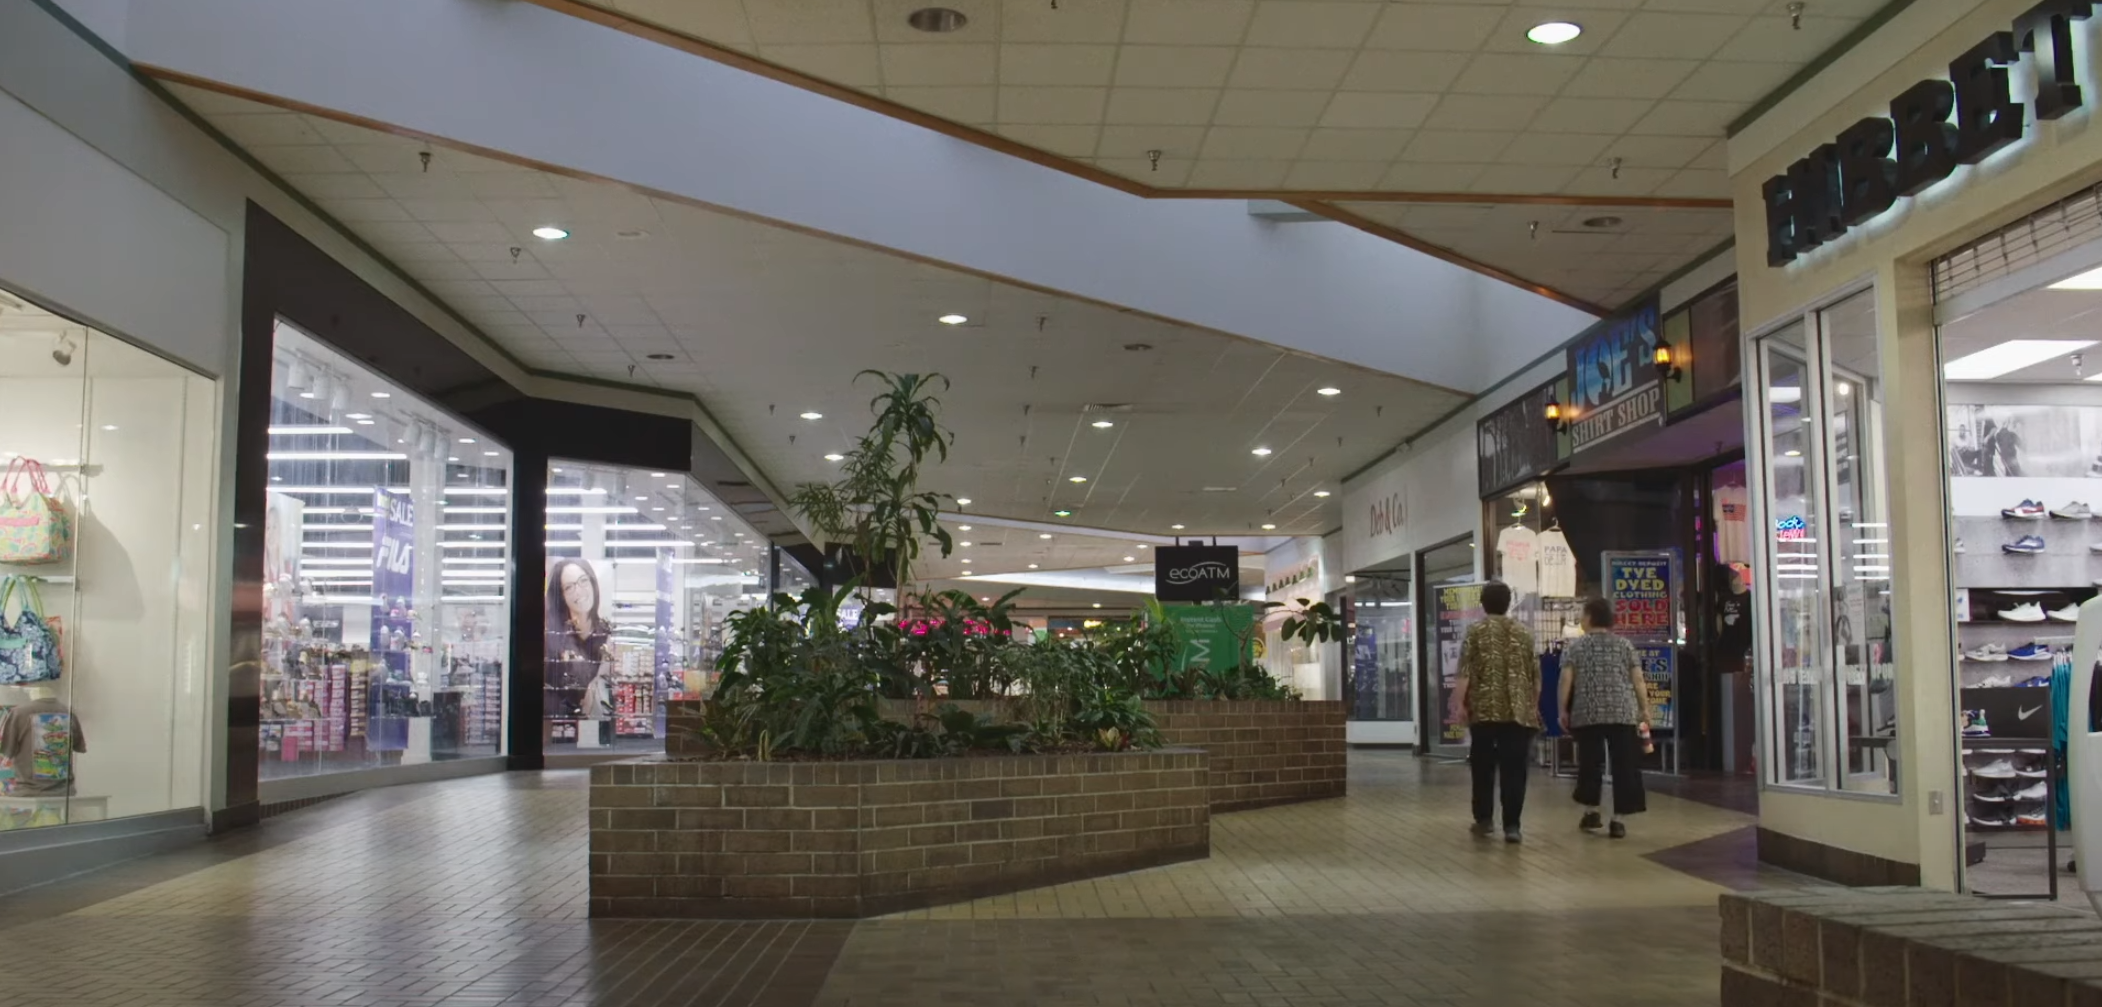 图源：《贾斯帕购物中心》（Jasper Mall, 2020）。电影里的购物中心会在外头架设临时的游乐场吸引人流。